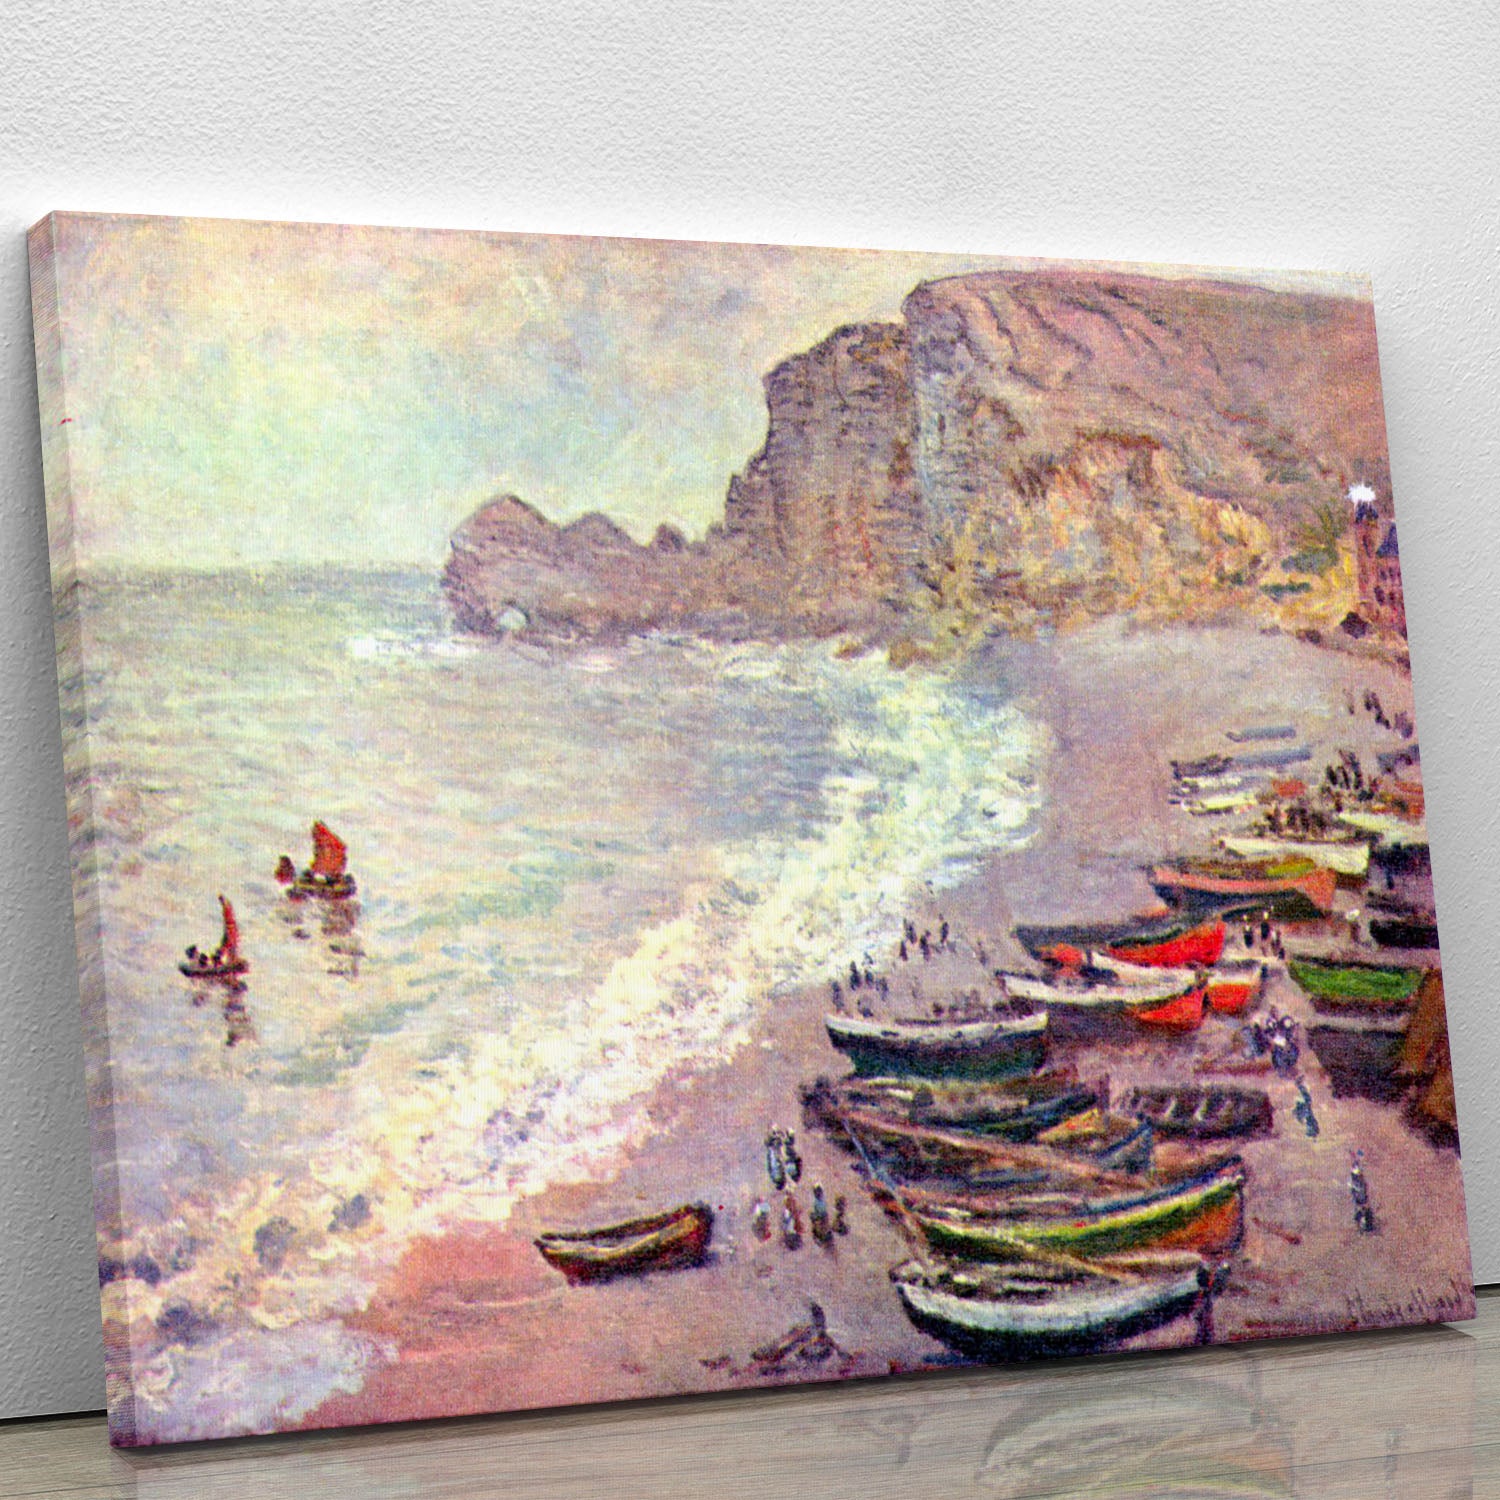 Etretat the beach and La Porte d'Amont by Monet Canvas Print or Poster - Canvas Art Rocks - 1